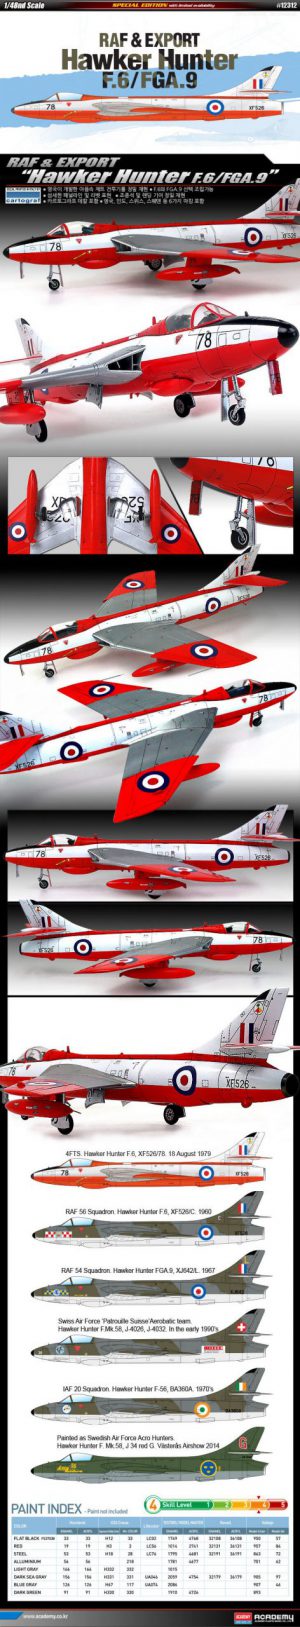 โมเดลเครื่องบิน Academy Hawker Hunter F.6 FGA.9 RAF&Export 1/48